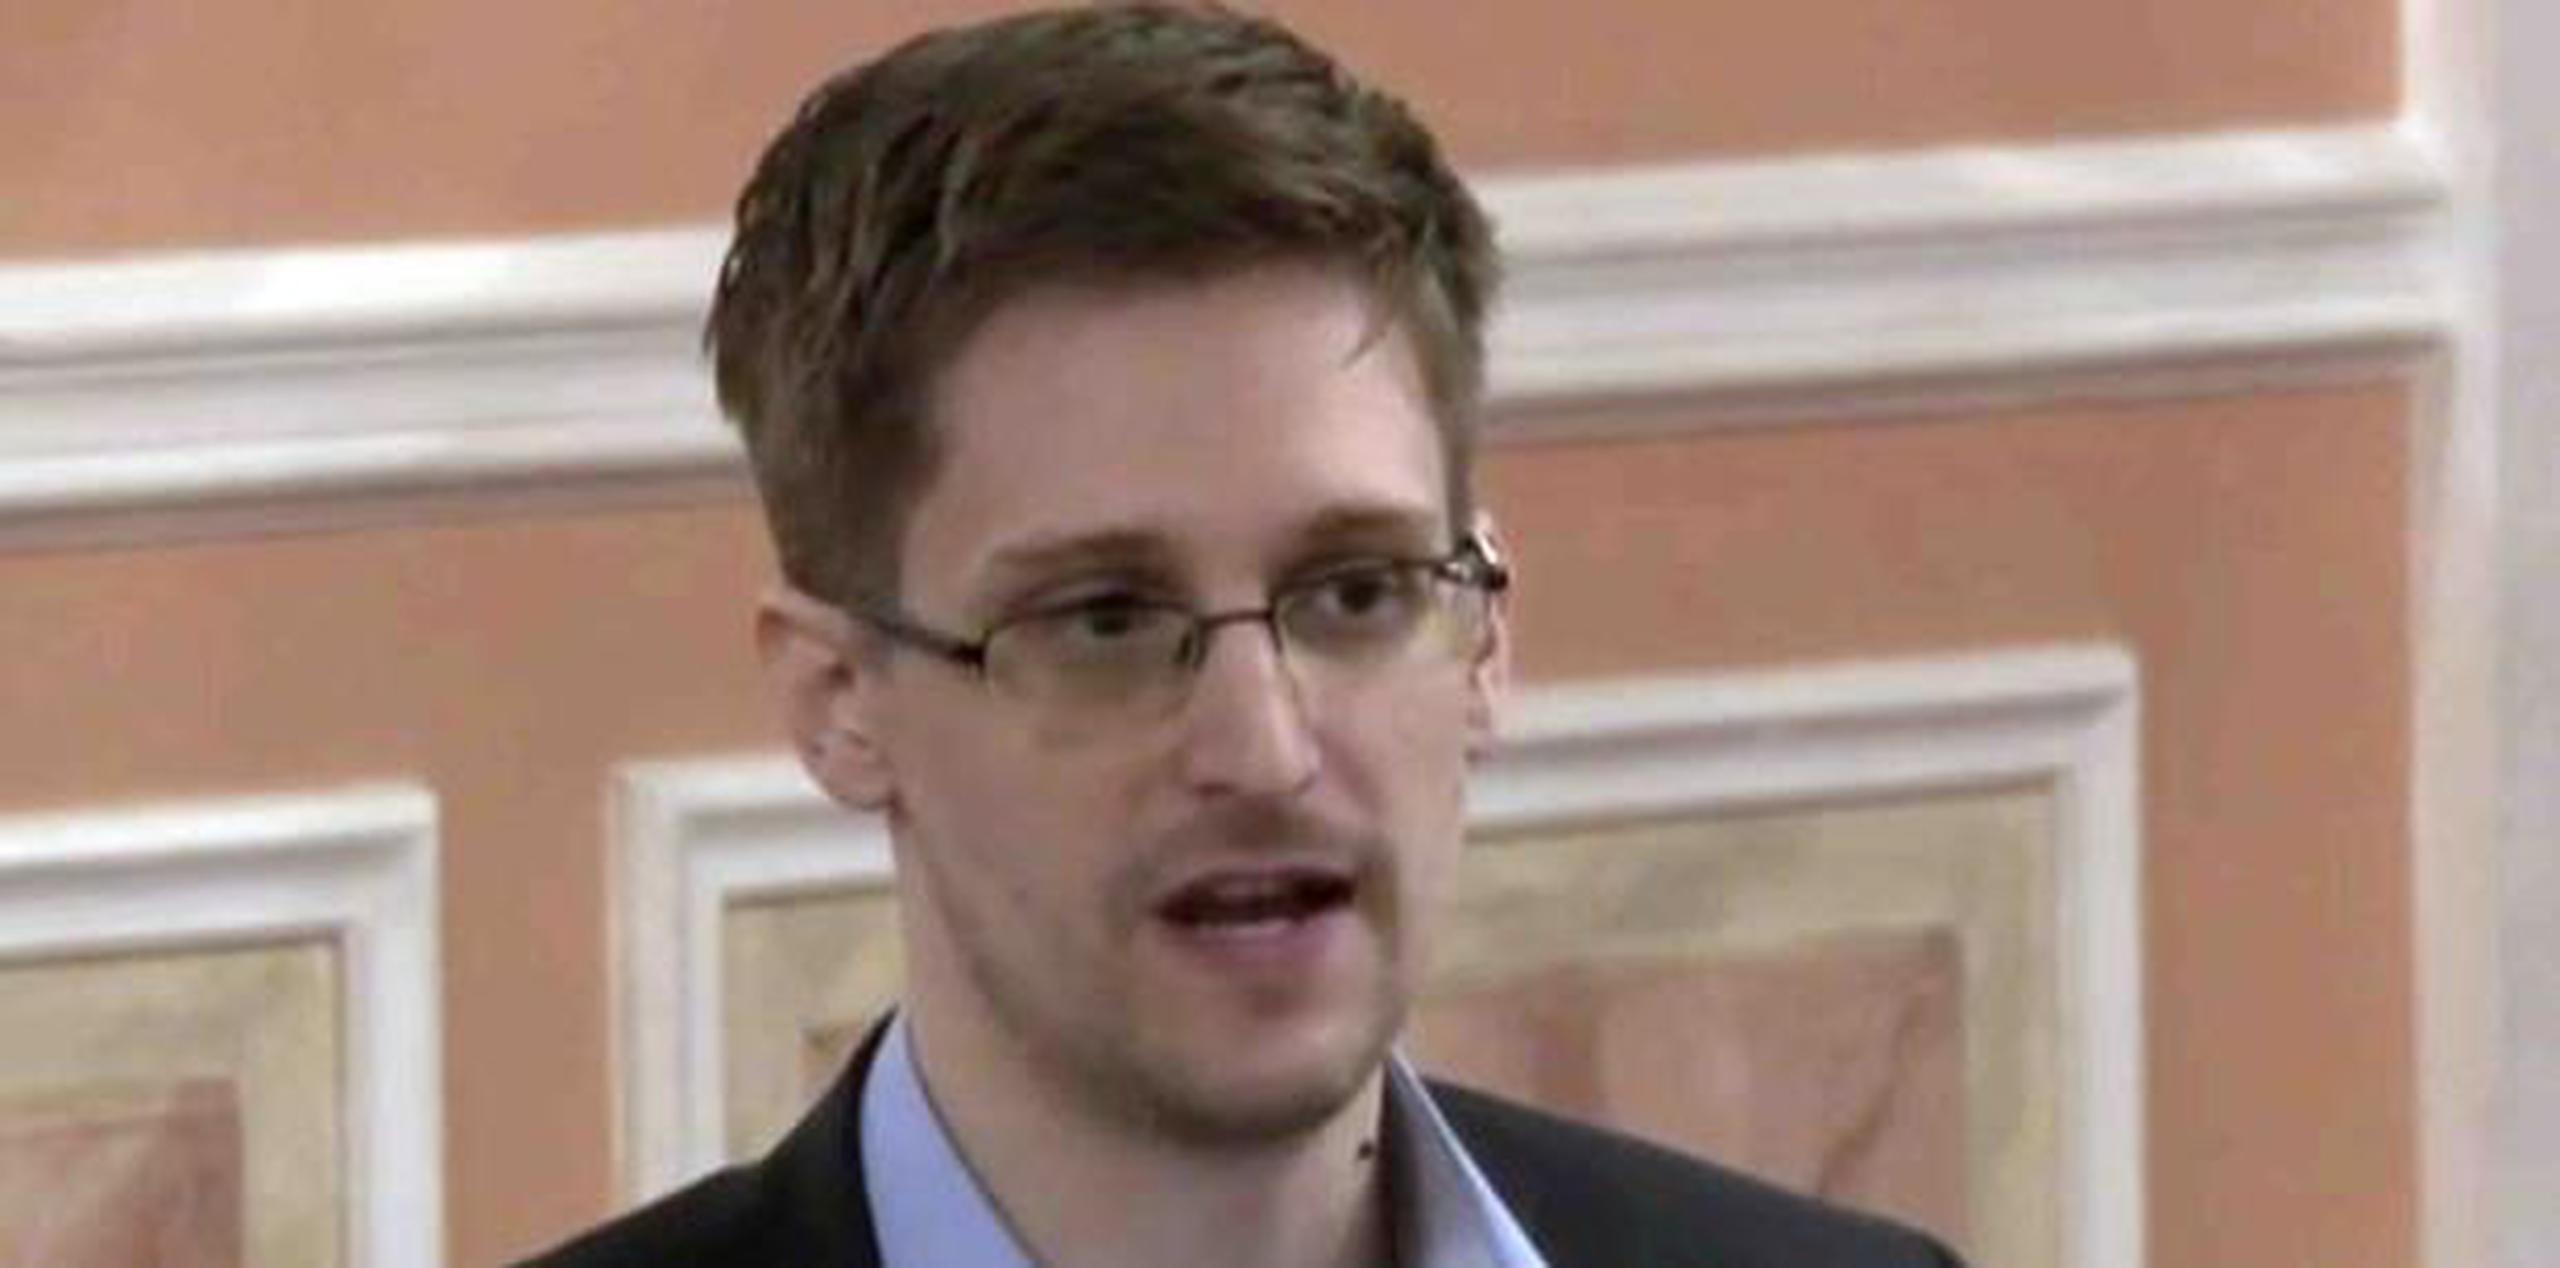 La biografía de Snowden, en la que cuenta por primera vez en detalle la historia de su vida, se publicará el martes en unos 20 países, Francia incluida. (AP)

